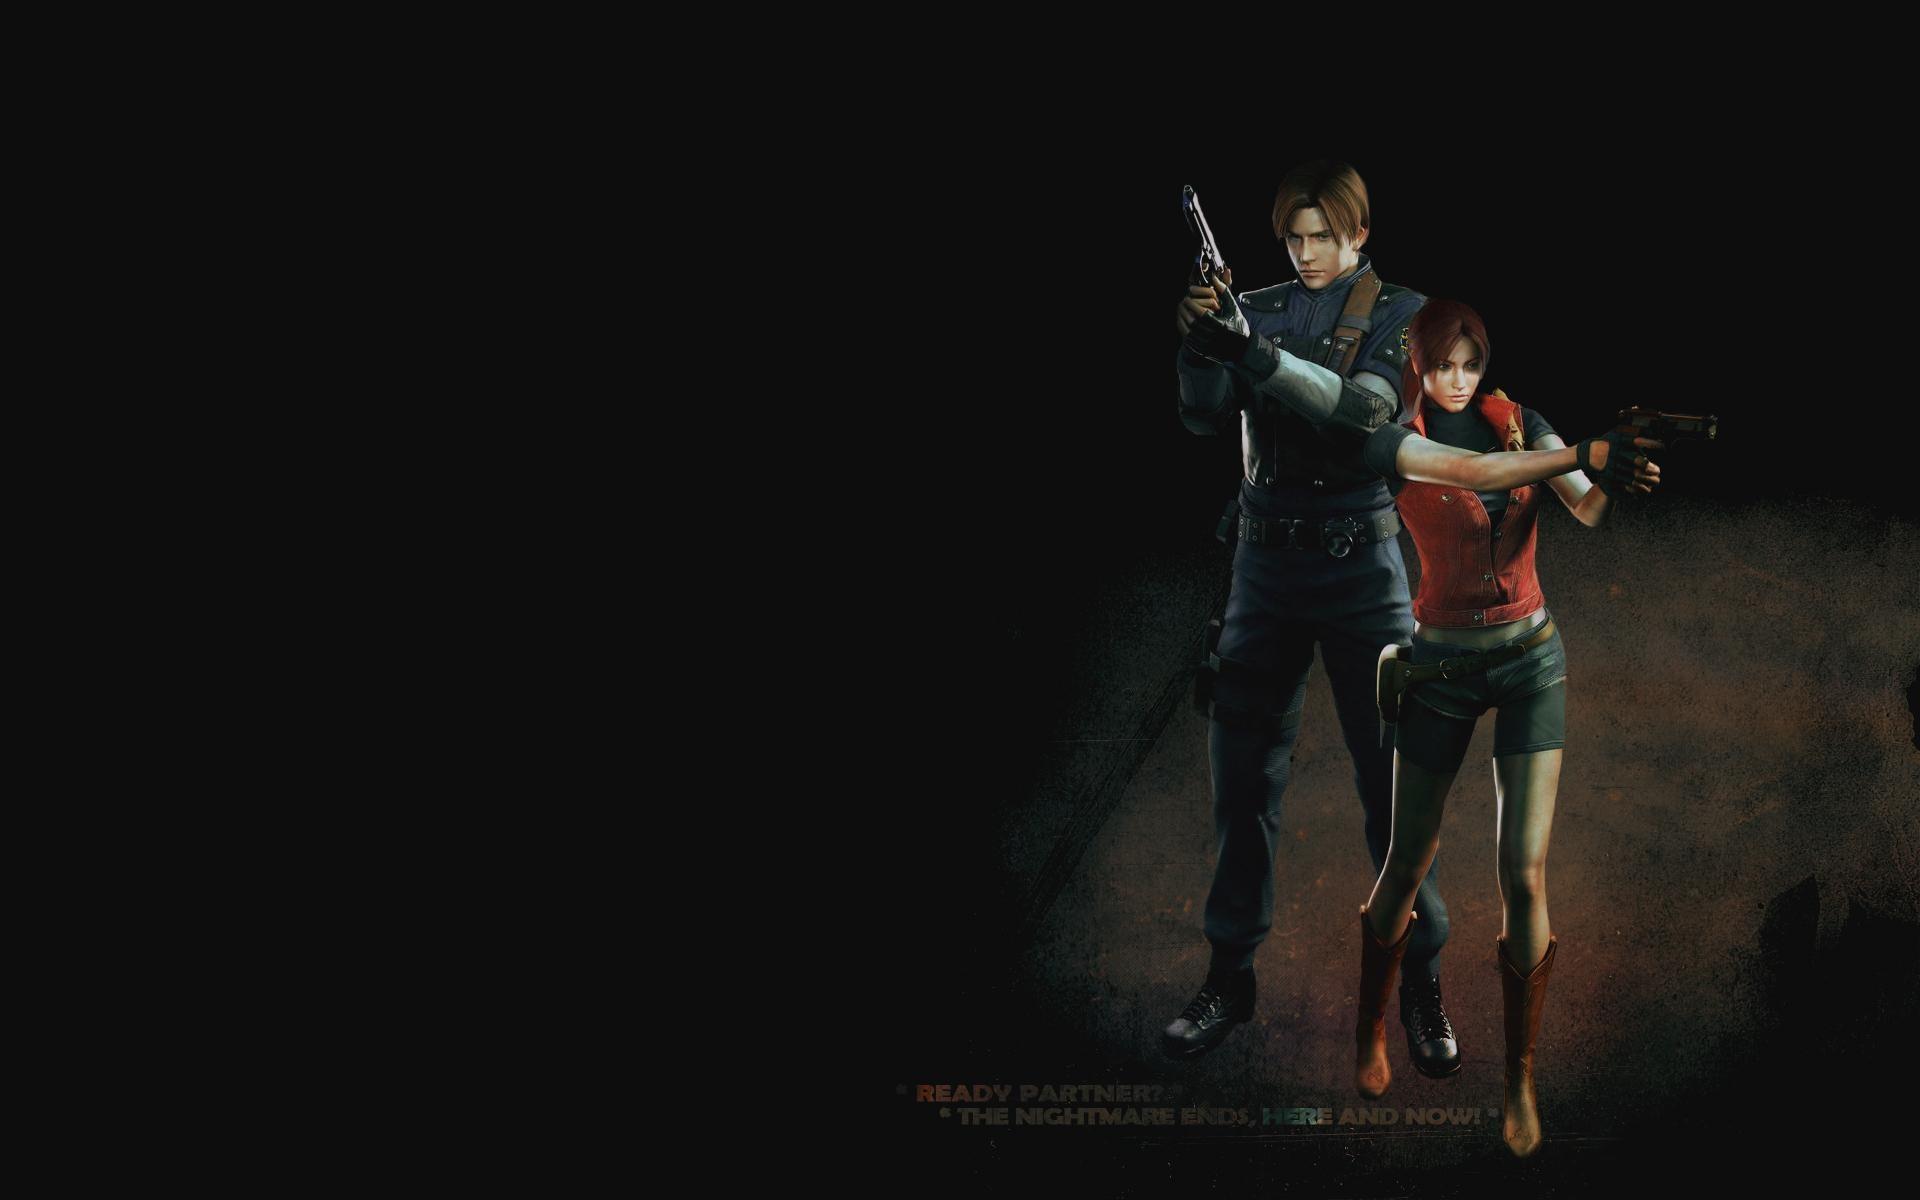 Resident Evil 2 Wallpaper